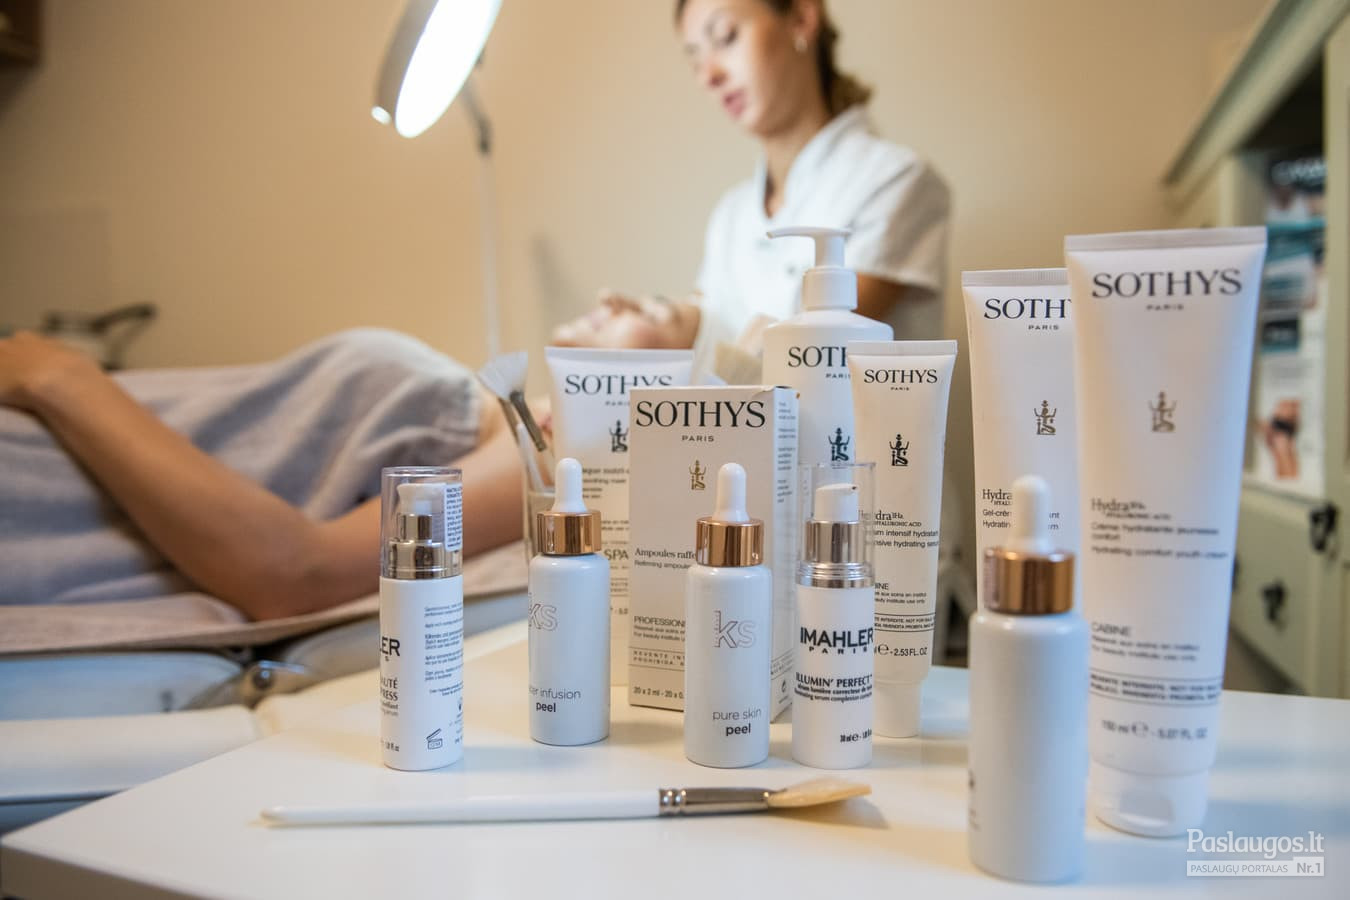 Arliekamas visapusiškas odos atjauninimas su Sothys kosmetika. Po trijų procedūrų kurso iki pusės metų išliekantis efektas.